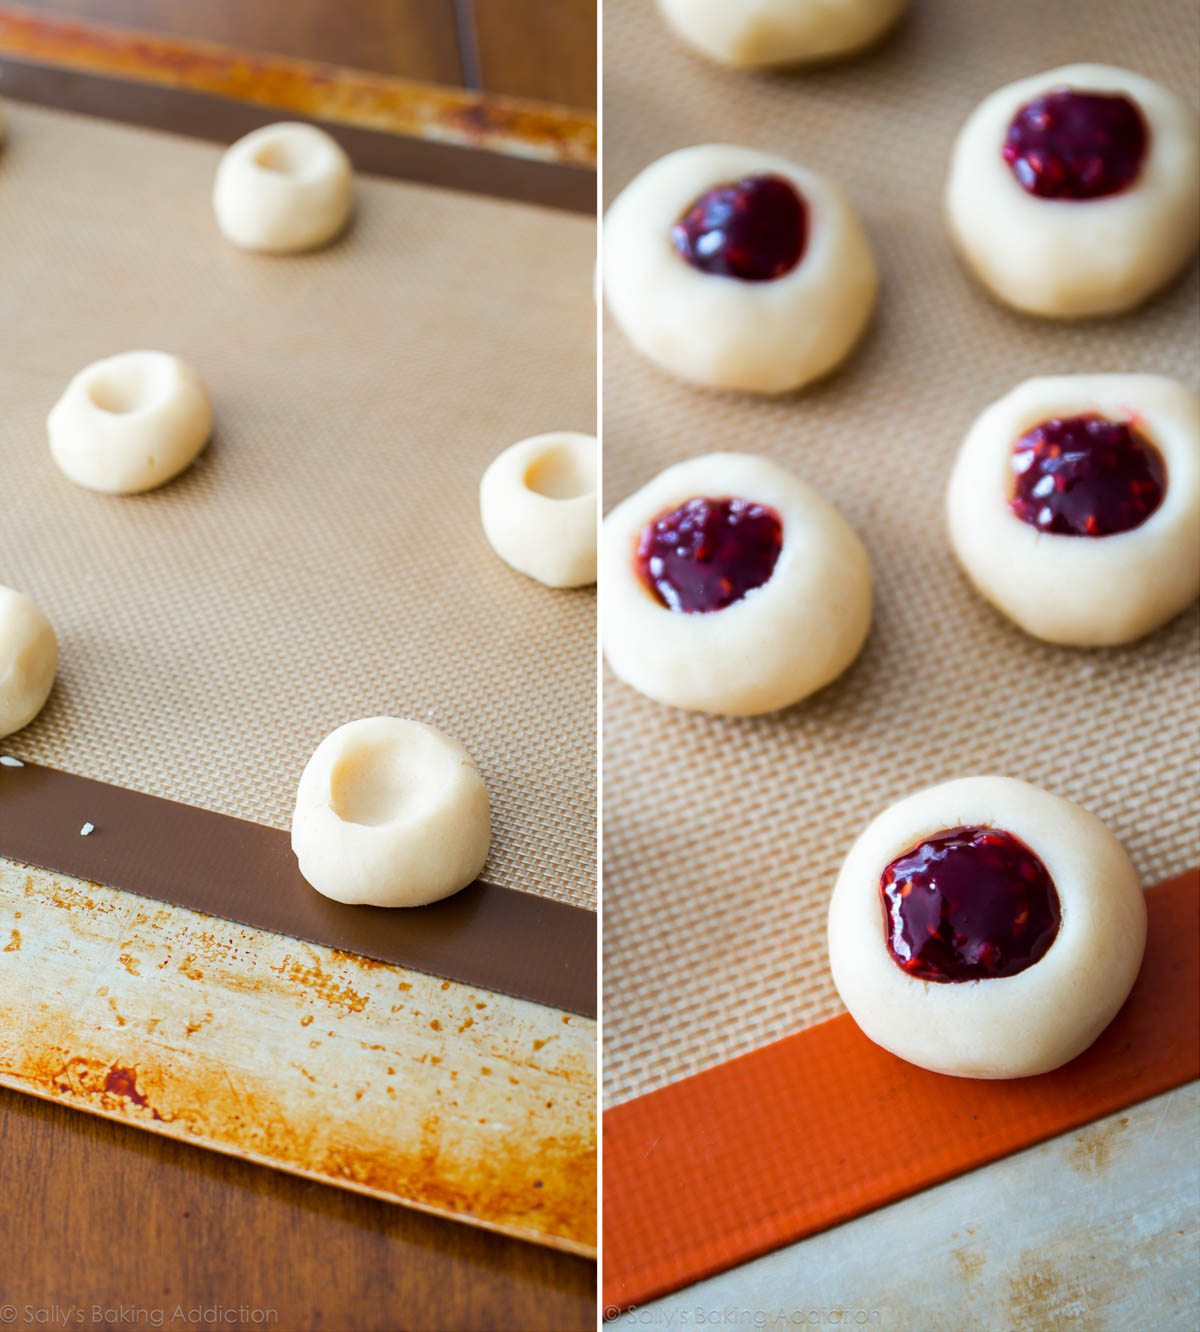 Comment faire des cookies à l'empreinte de framboise et d'amande sur sallysbakingaddiction.com